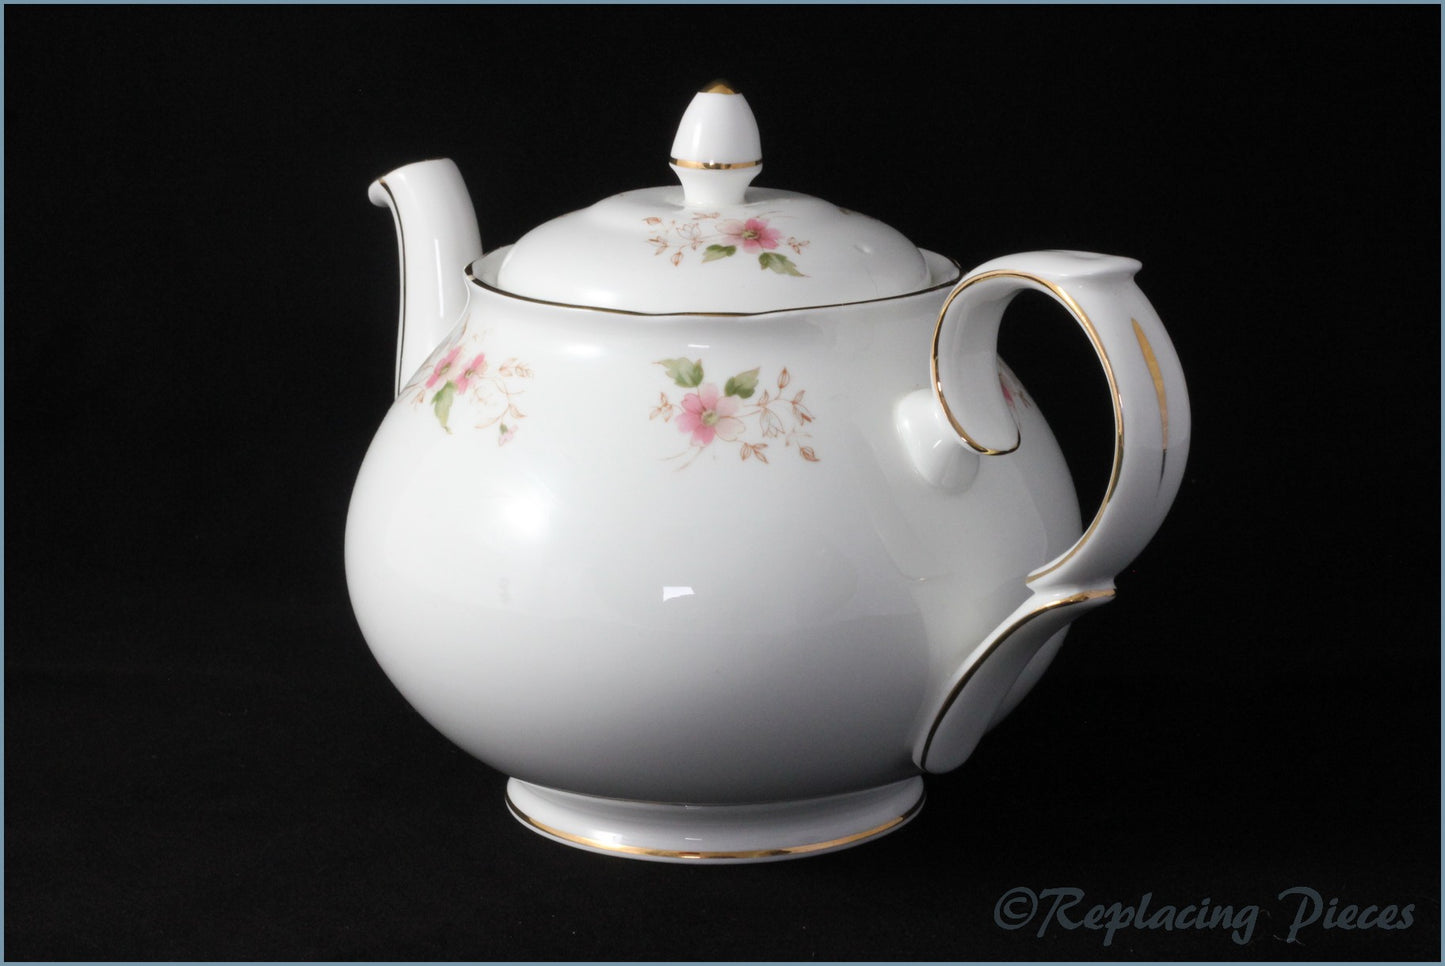 Duchess - Glen - 1 3/4 Pint Teapot